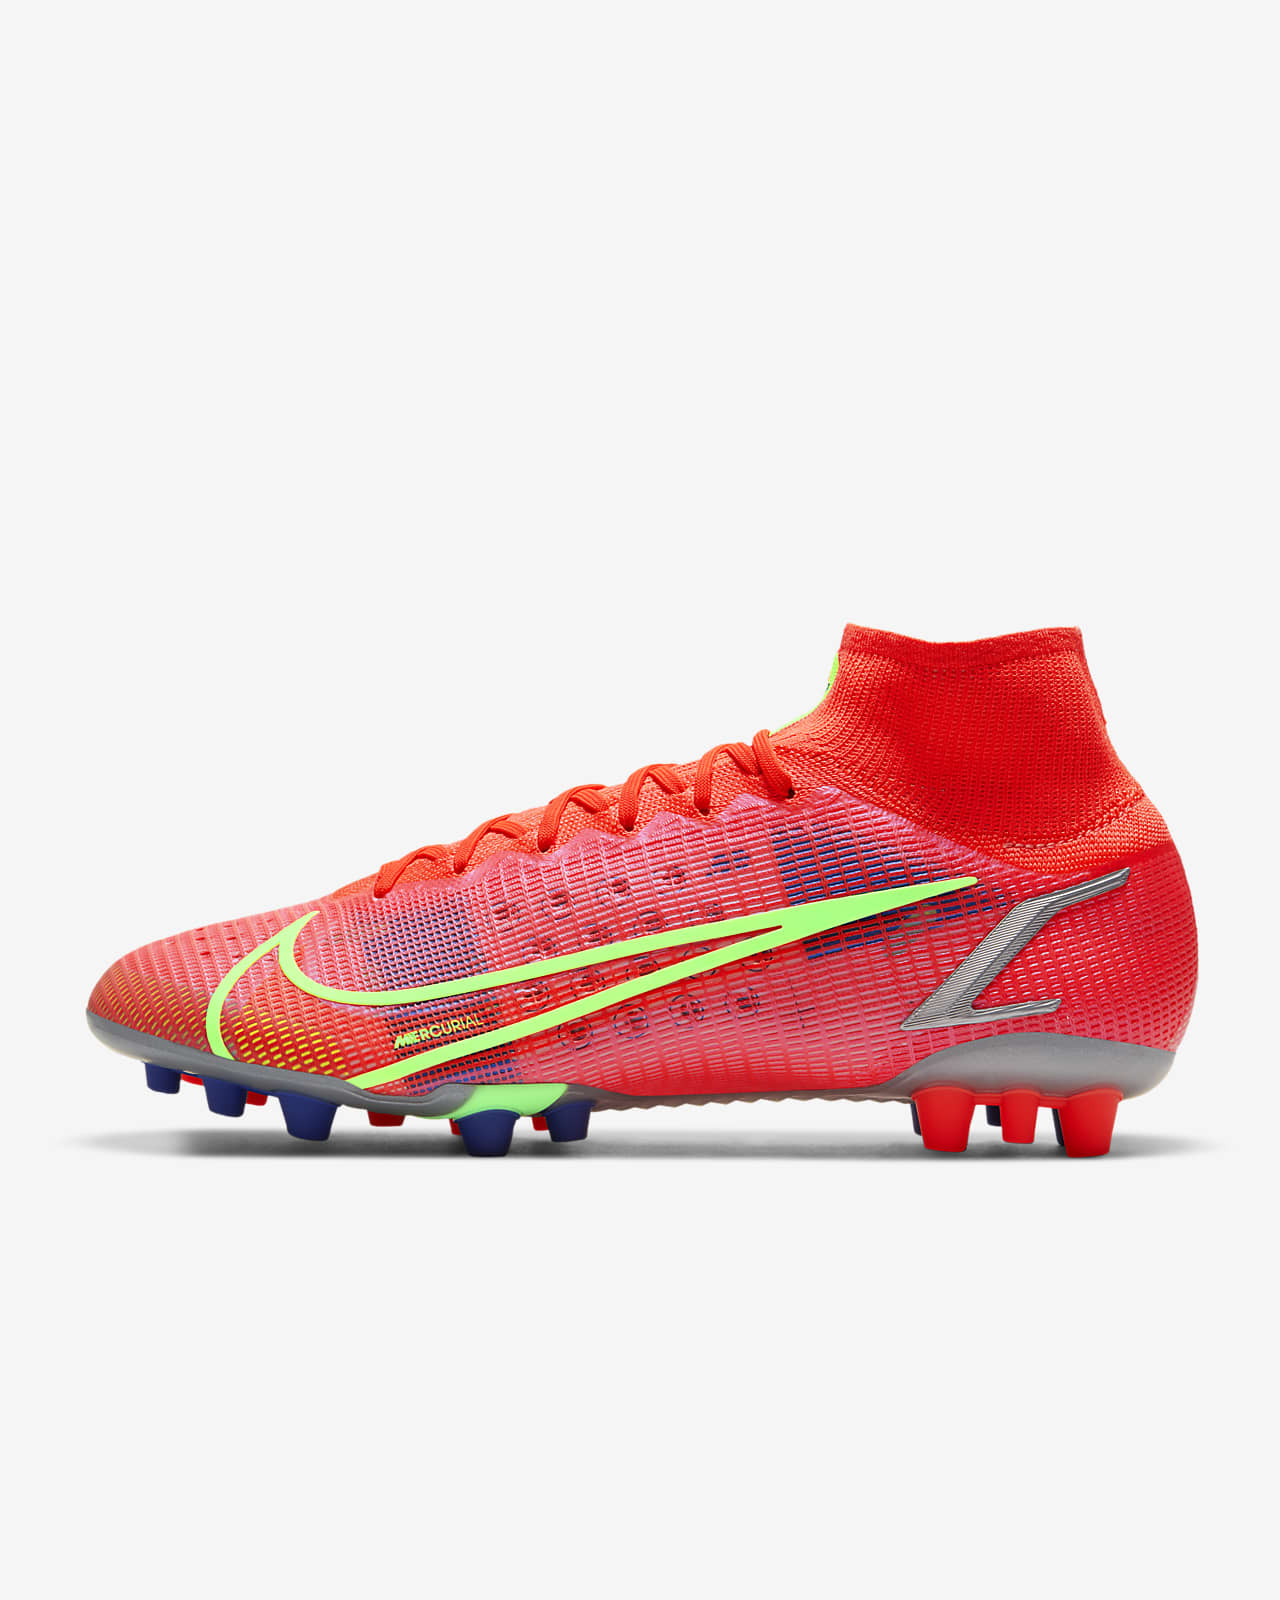 nike football boots artificial grass